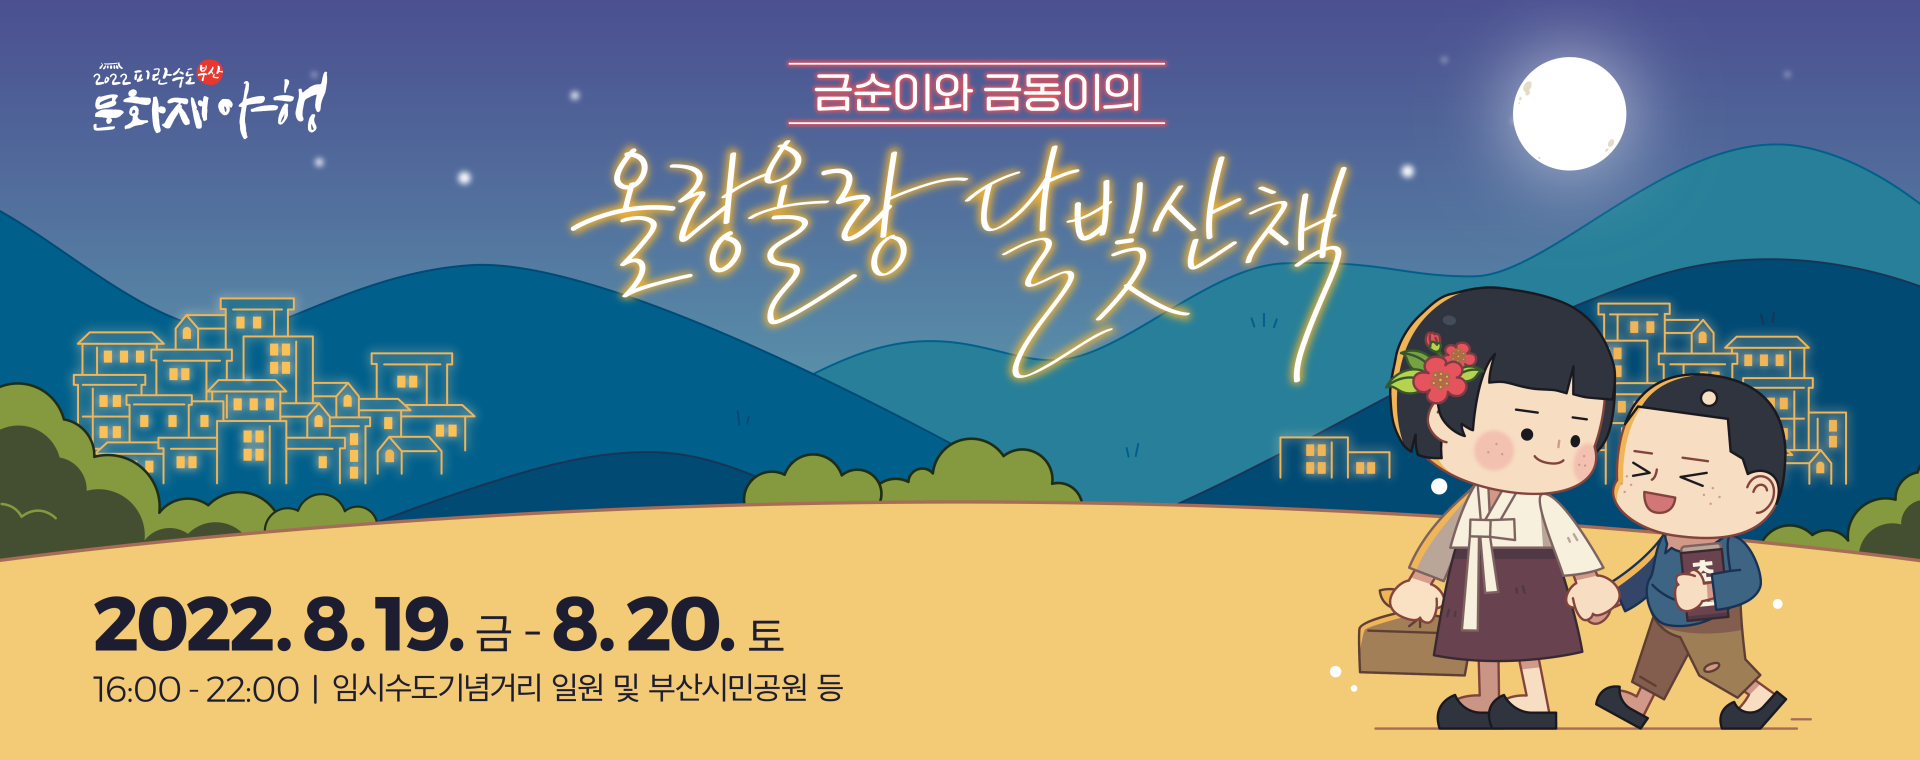 2022 피란수도 부산 문화재야행 야(夜)사 체험프로그램 (부산 동아대 석당박물관 정문)